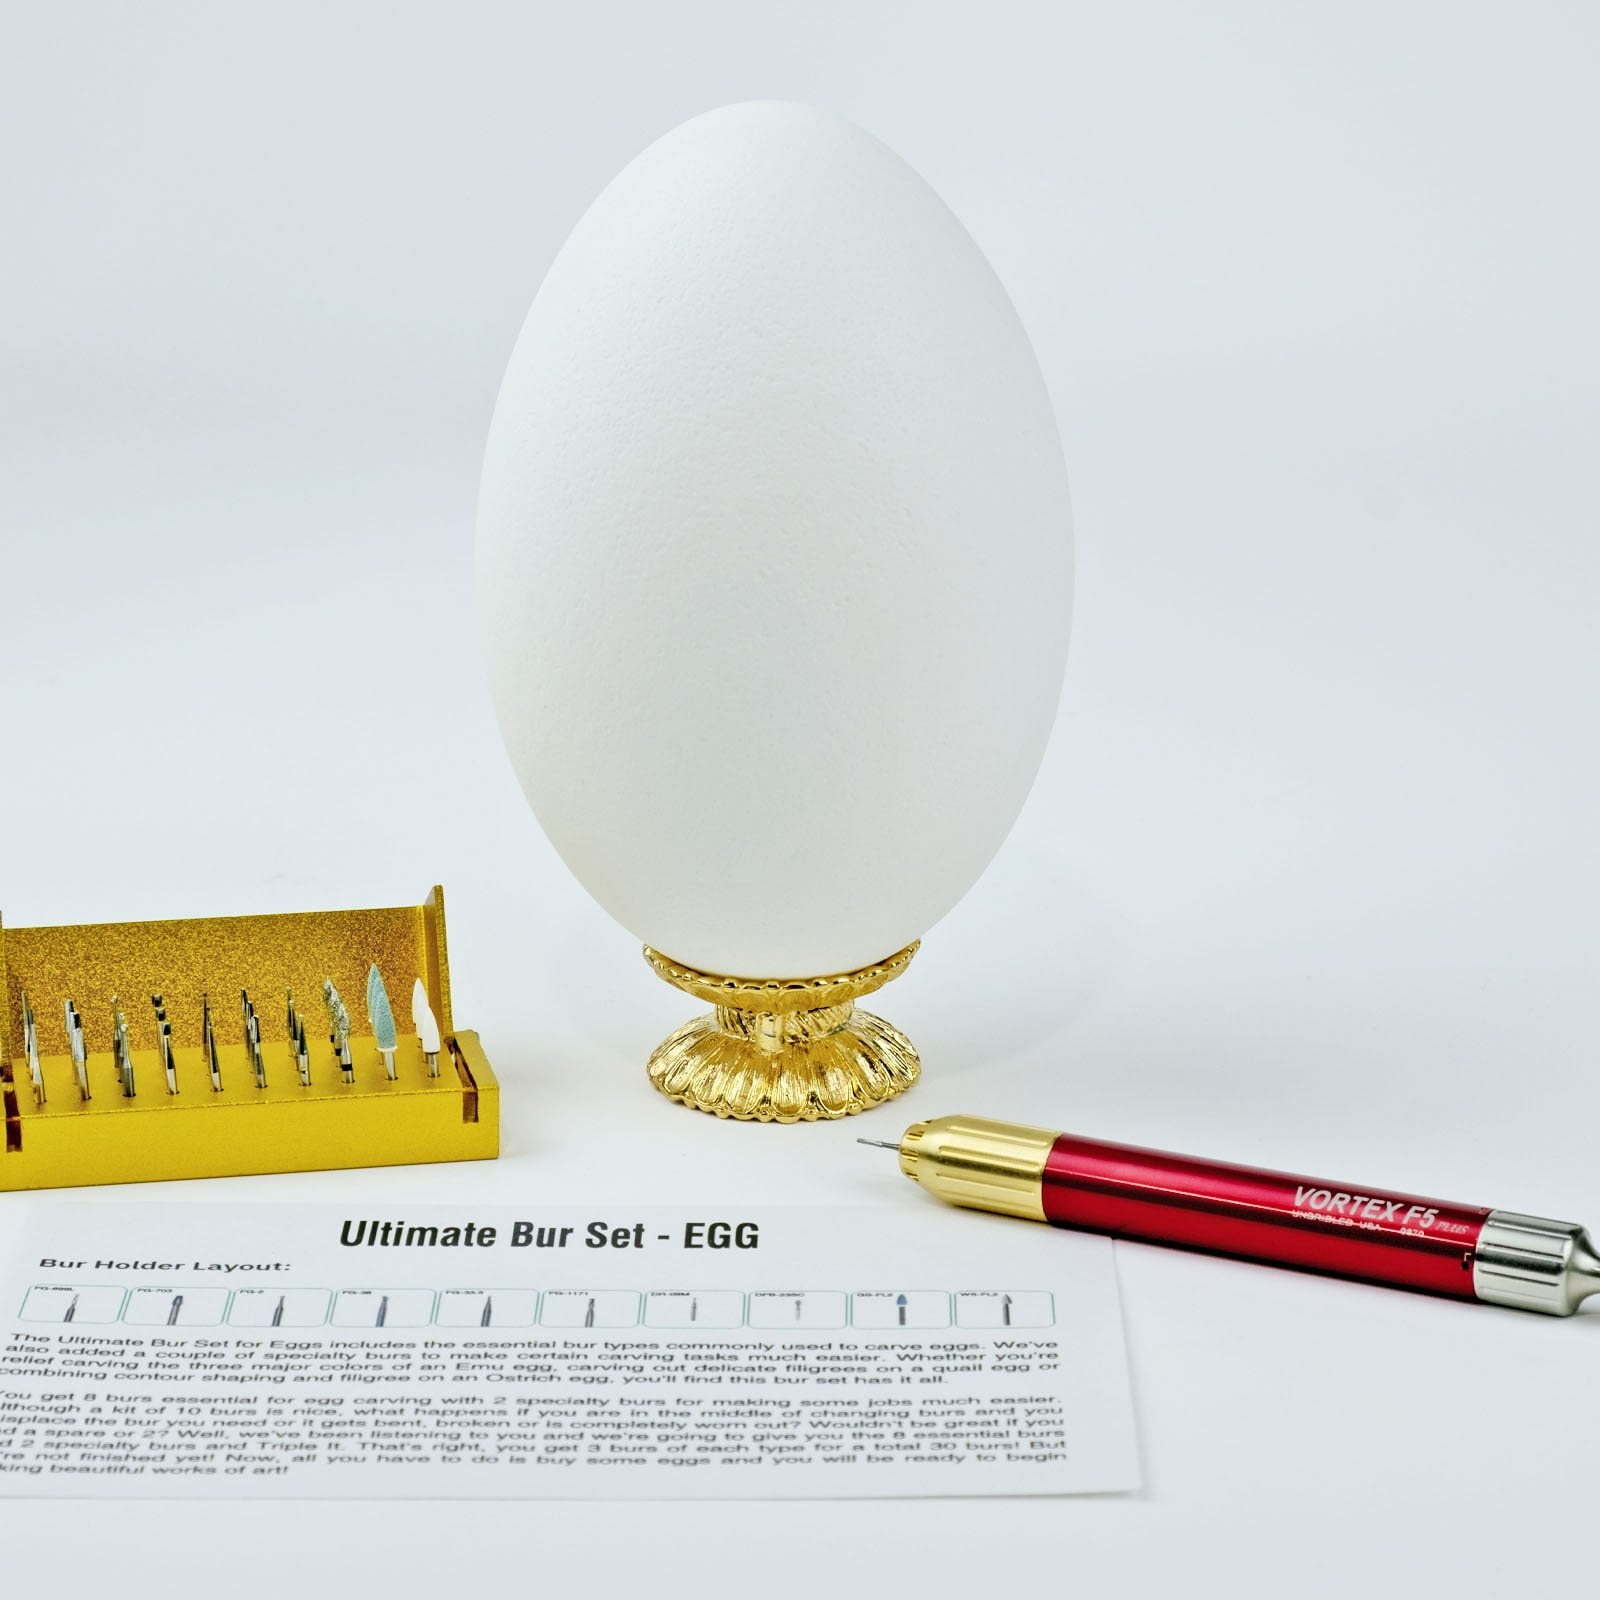 Emu Egg with Vortex F5 carver and Ultimate bur set for egg